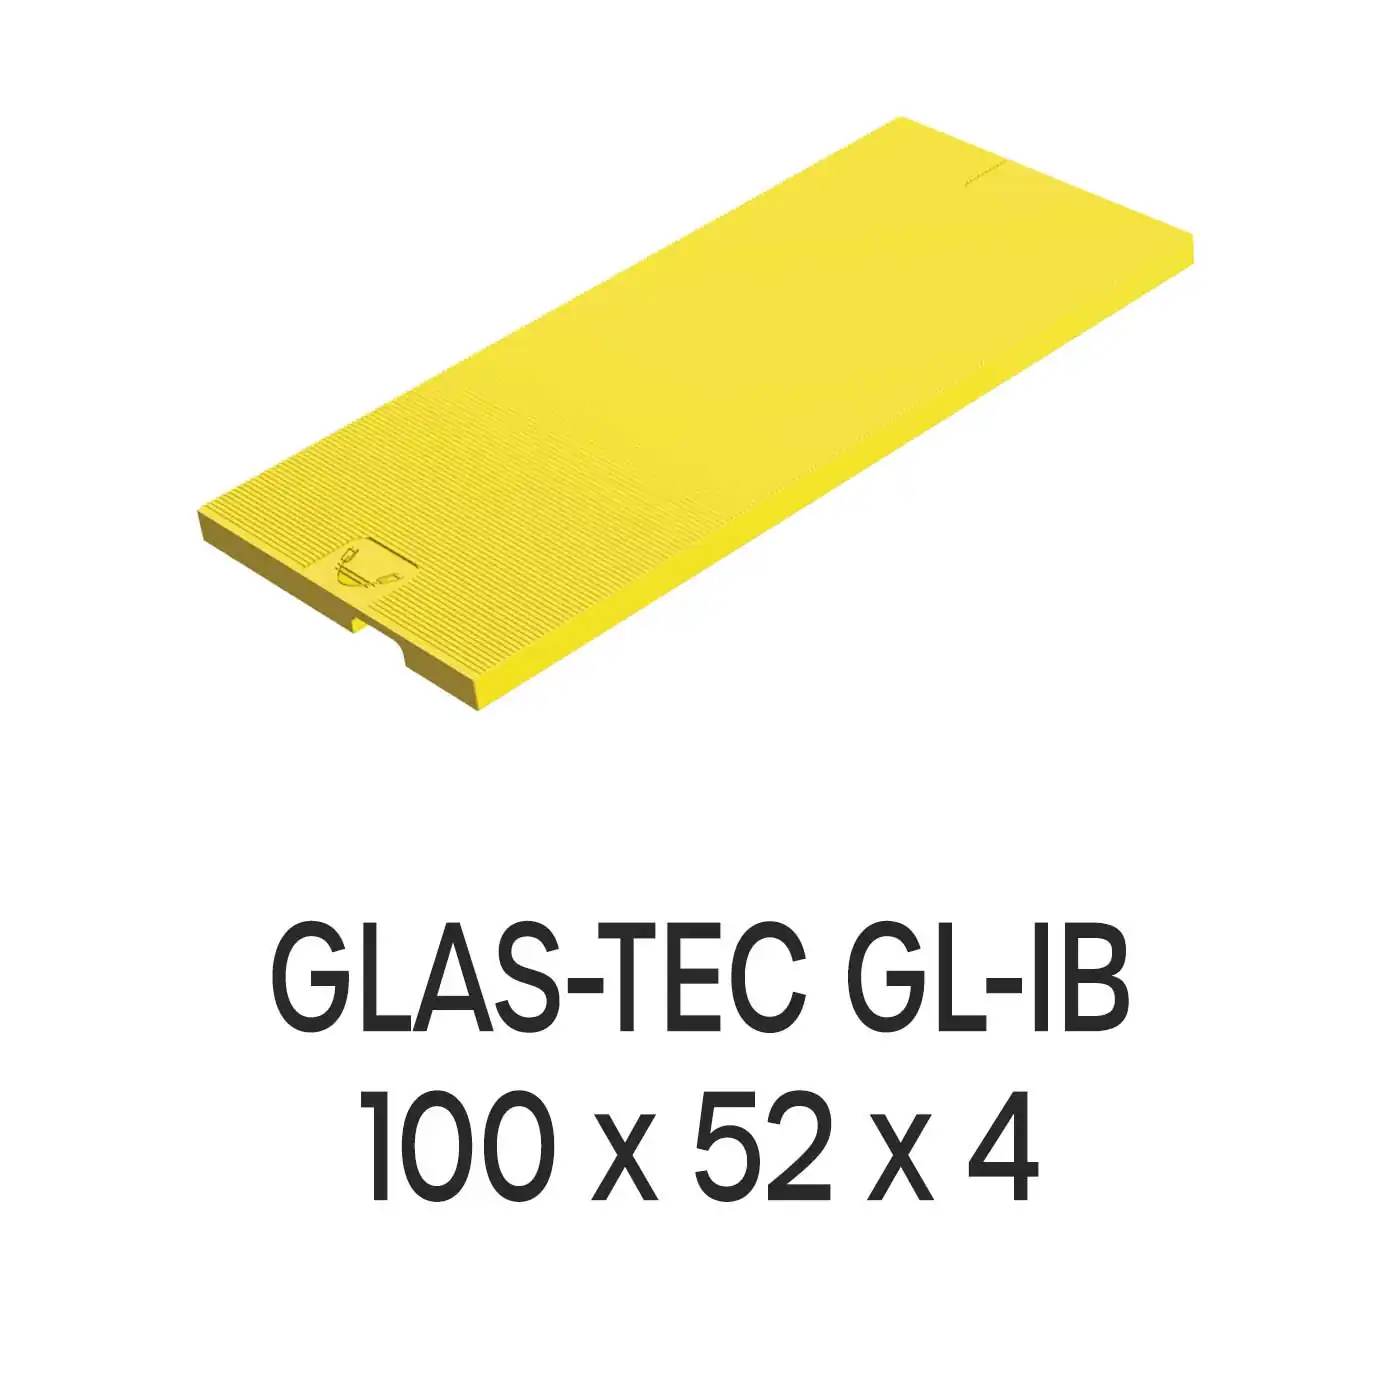 Roto Verglasungsklotz GLAS-TEC GL-IB, 100 x 52 x 4 mm, schwarz, 500 Stück